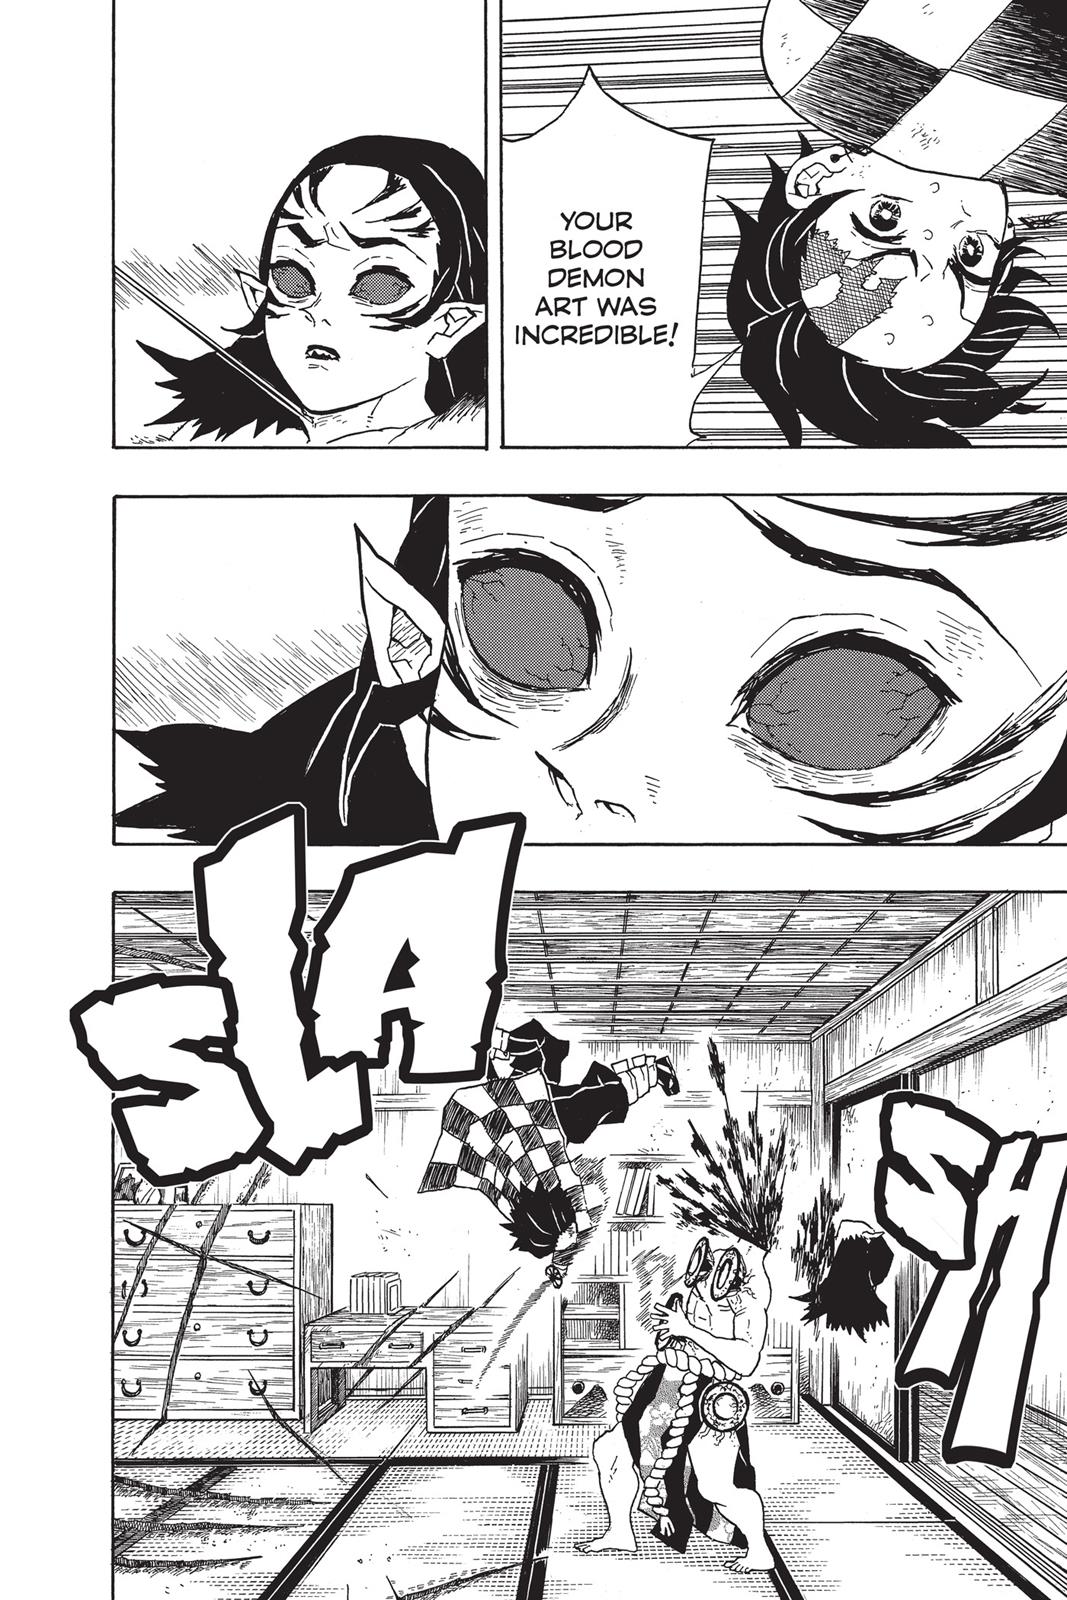 Demon Slayer Manga Manga Chapter - 25 - image 6